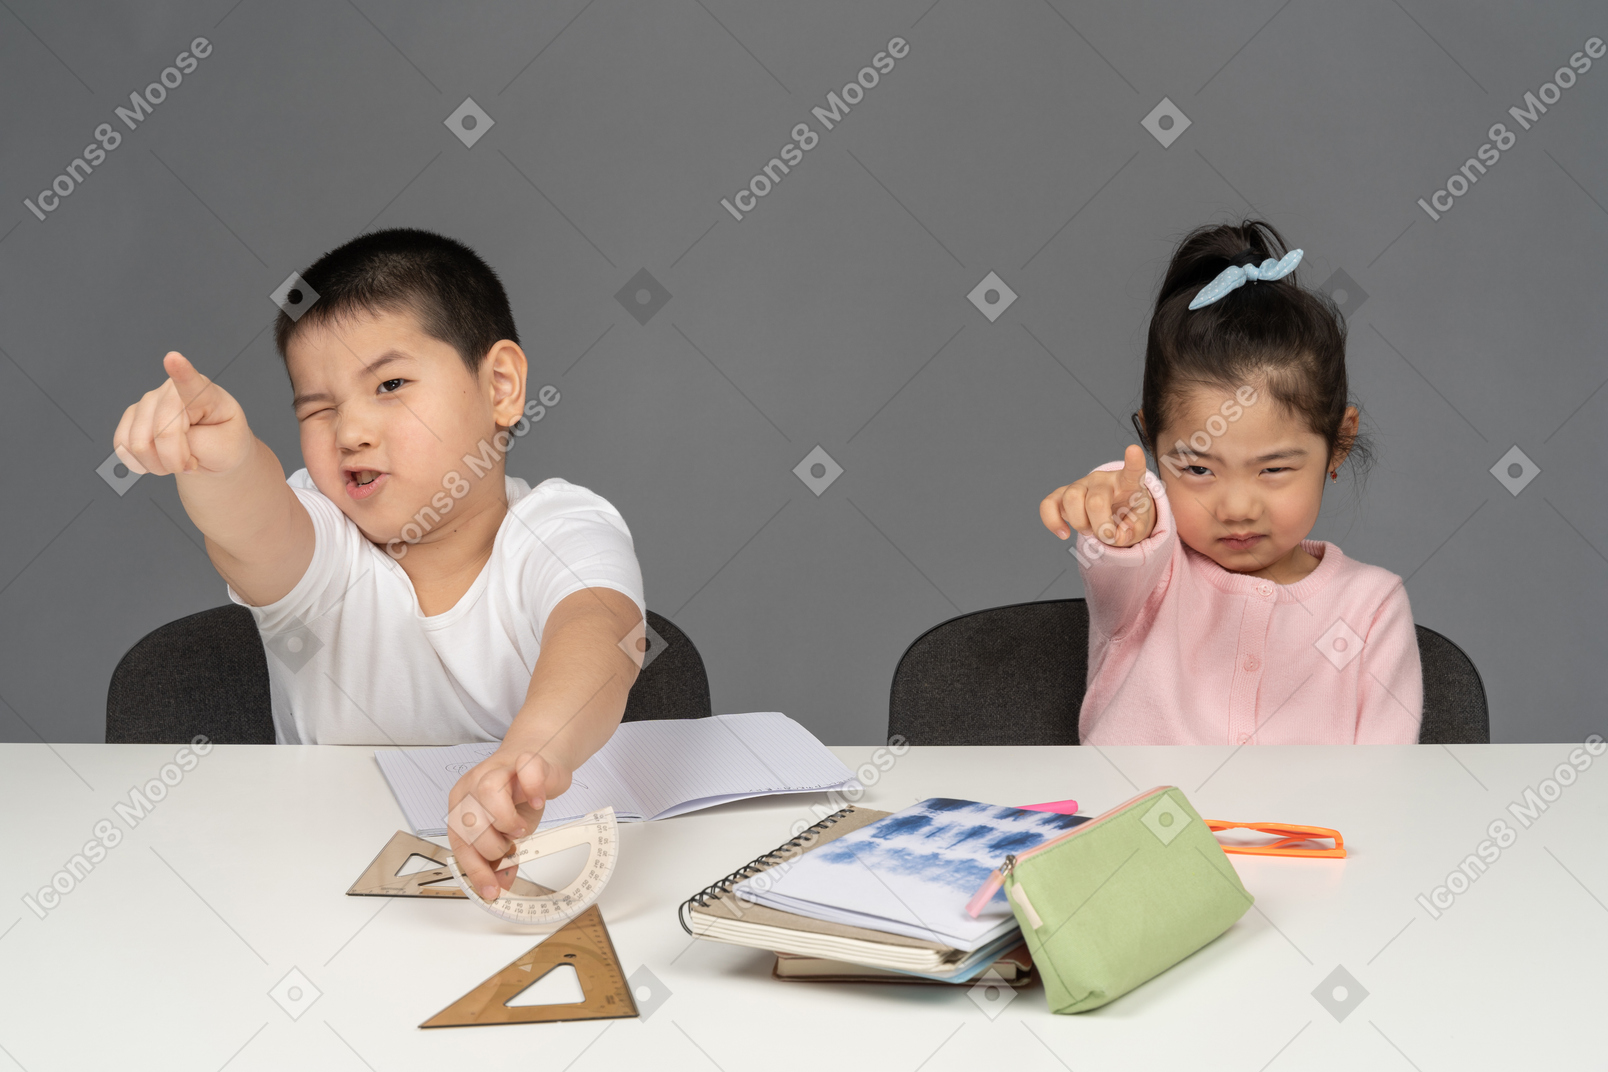 Junge und mädchen zeigen nach vorne, während sie am schreibtisch sitzen